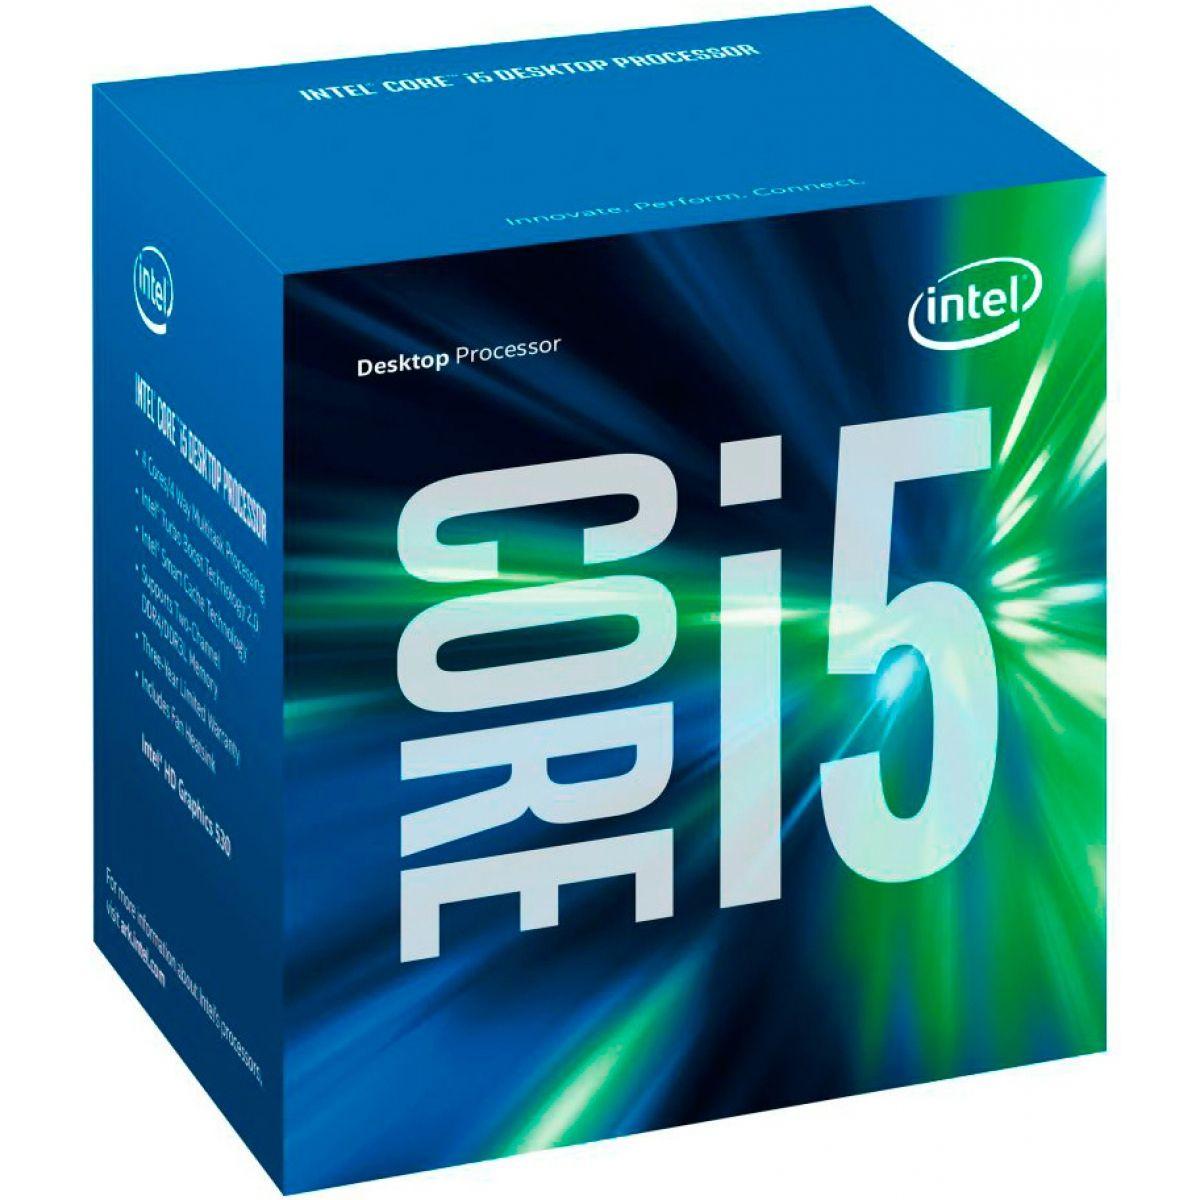 Pc Gamer Barato Completo Intel I5 16gb Hd 1tb Monitor 19